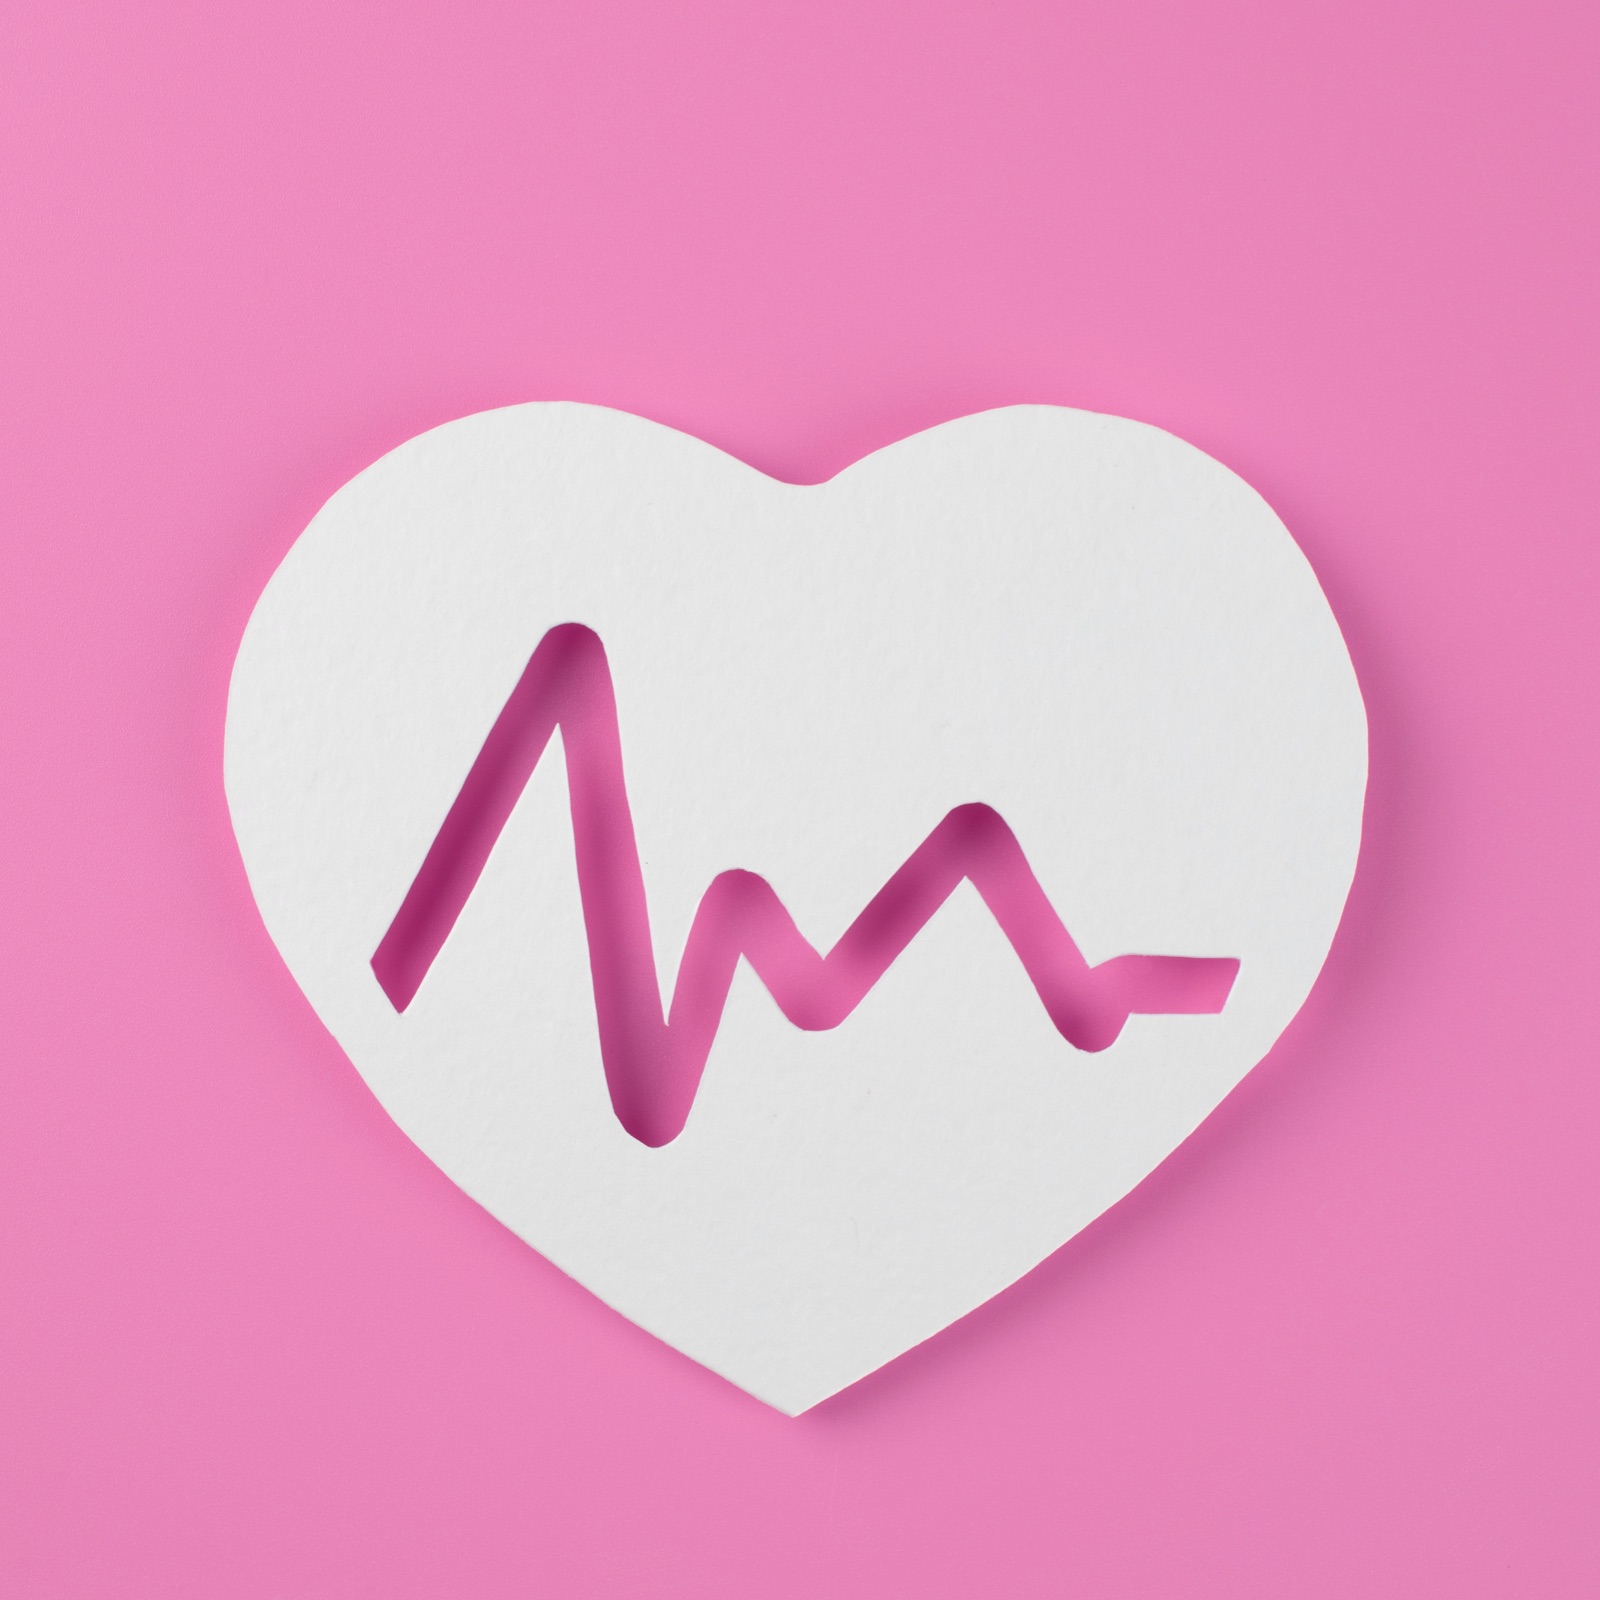 Imparare a utilizzare i dati della frequenza cardiaca nel modo corretto